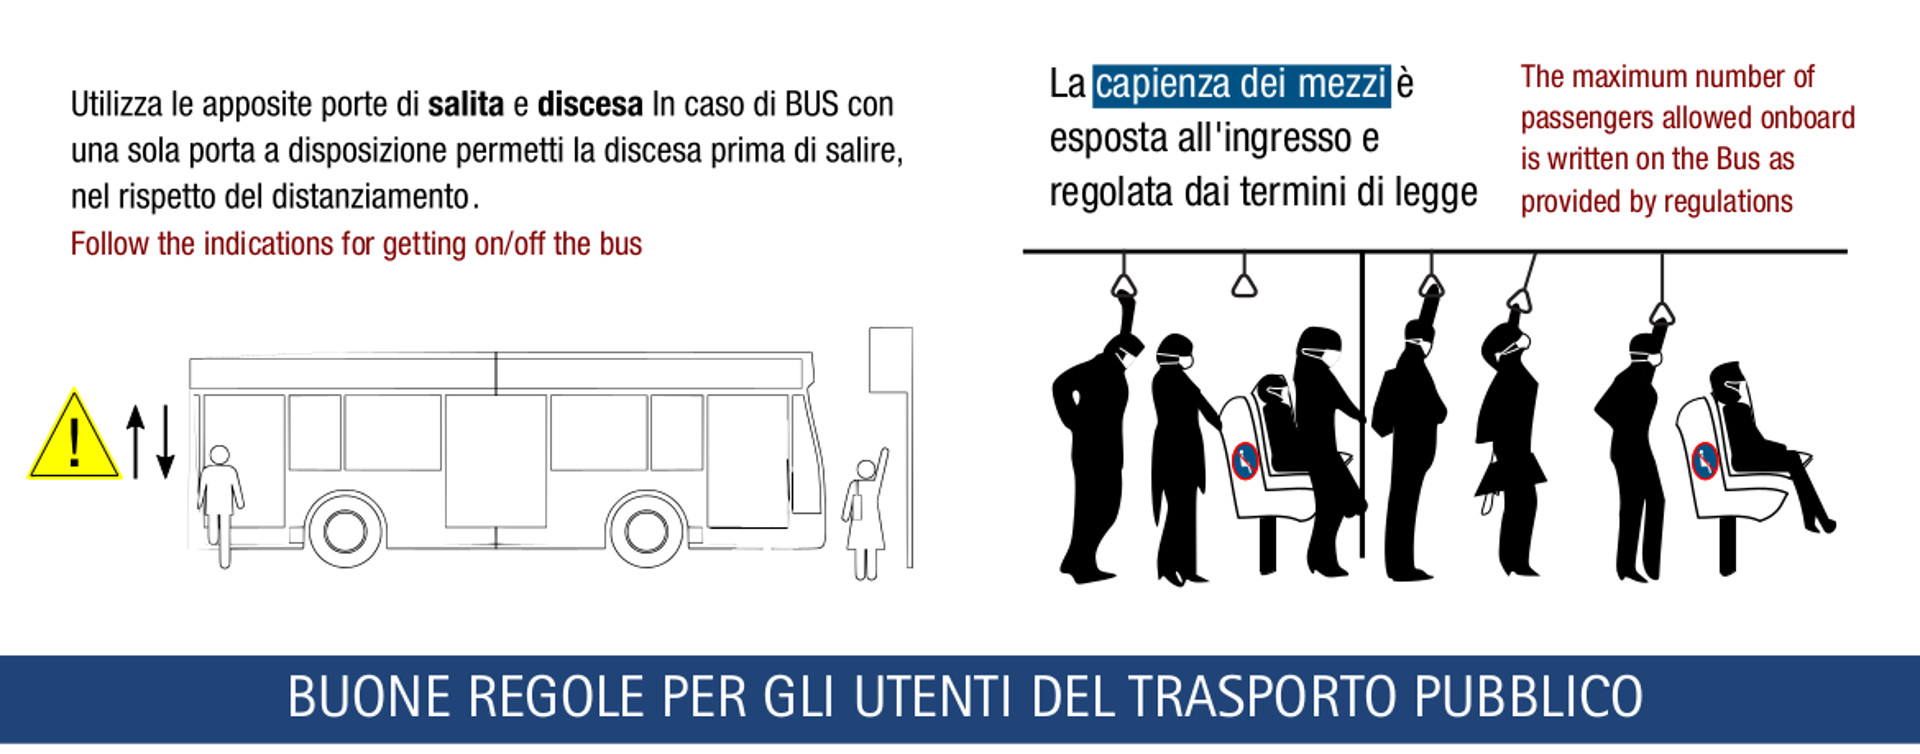 Dettagio dall'infografica sulle buone regole per glu utenti del trasporto pubblico